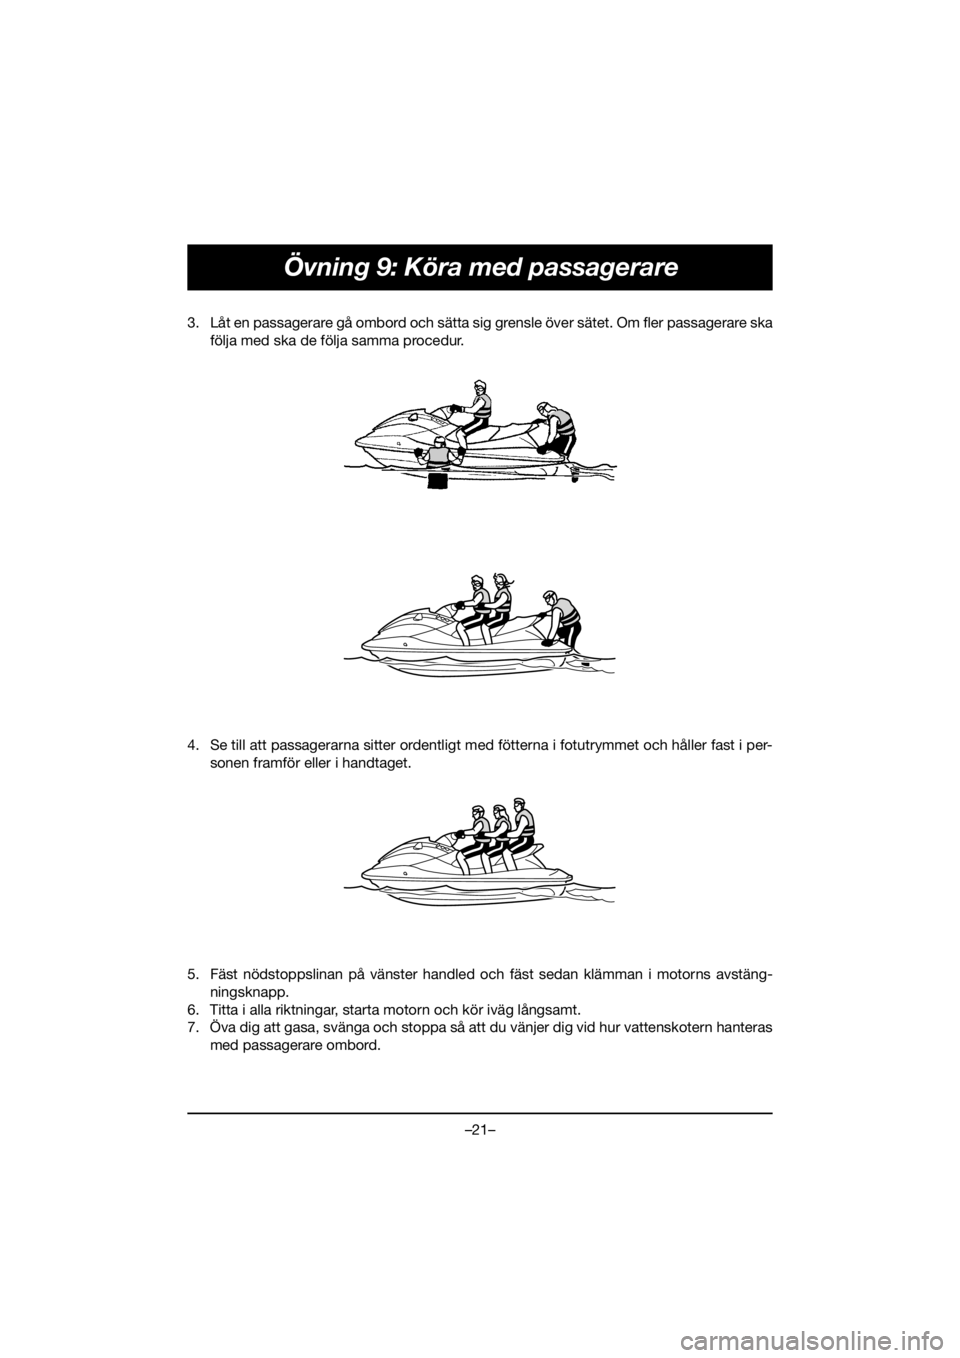 YAMAHA FJR1300 2019  Notices Demploi (in French) –21–
Övning 9: Köra med passagerare
3. Låt en passagerare gå ombord och sätta sig grensle över sätet. Om fler passagerare ska
följa med ska de följa samma procedur. 
4. Se till att passag